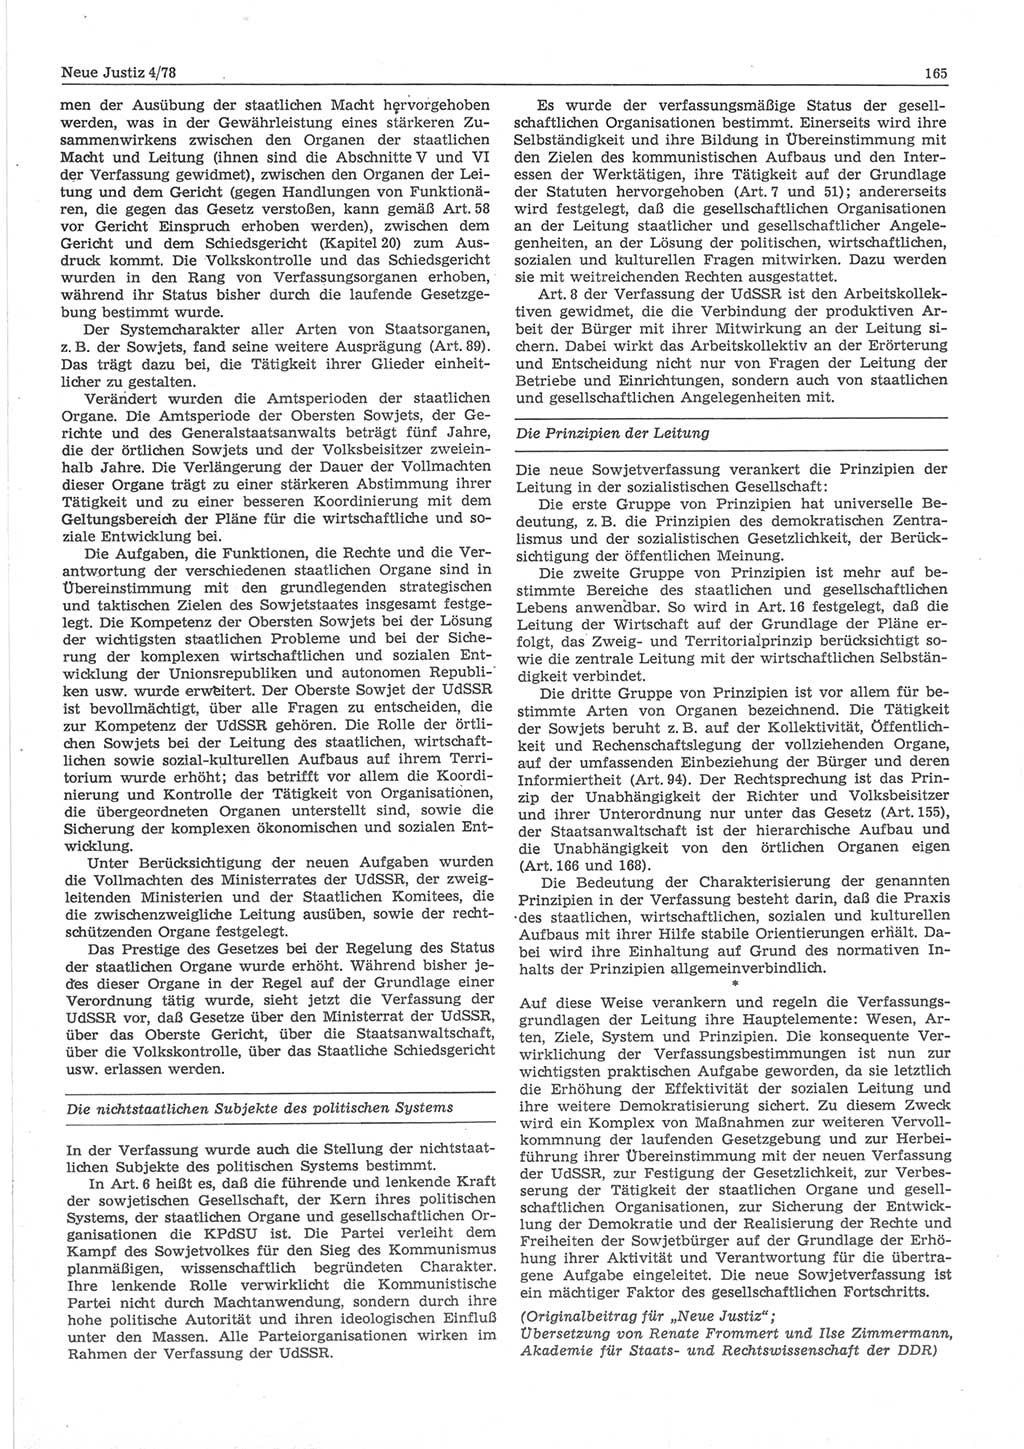 Neue Justiz (NJ), Zeitschrift für sozialistisches Recht und Gesetzlichkeit [Deutsche Demokratische Republik (DDR)], 32. Jahrgang 1978, Seite 165 (NJ DDR 1978, S. 165)